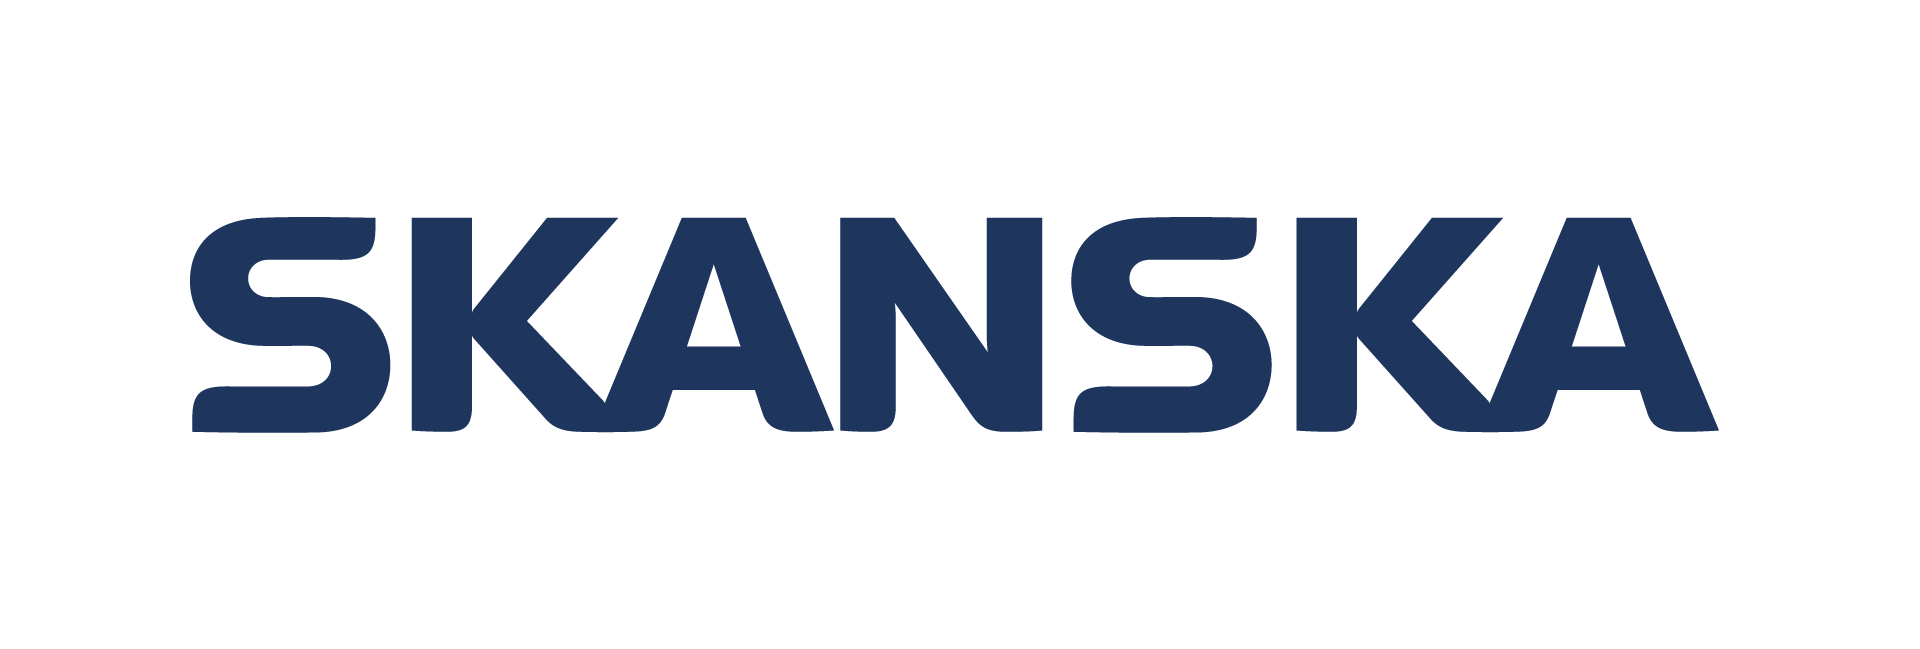 Skanska Company Logo